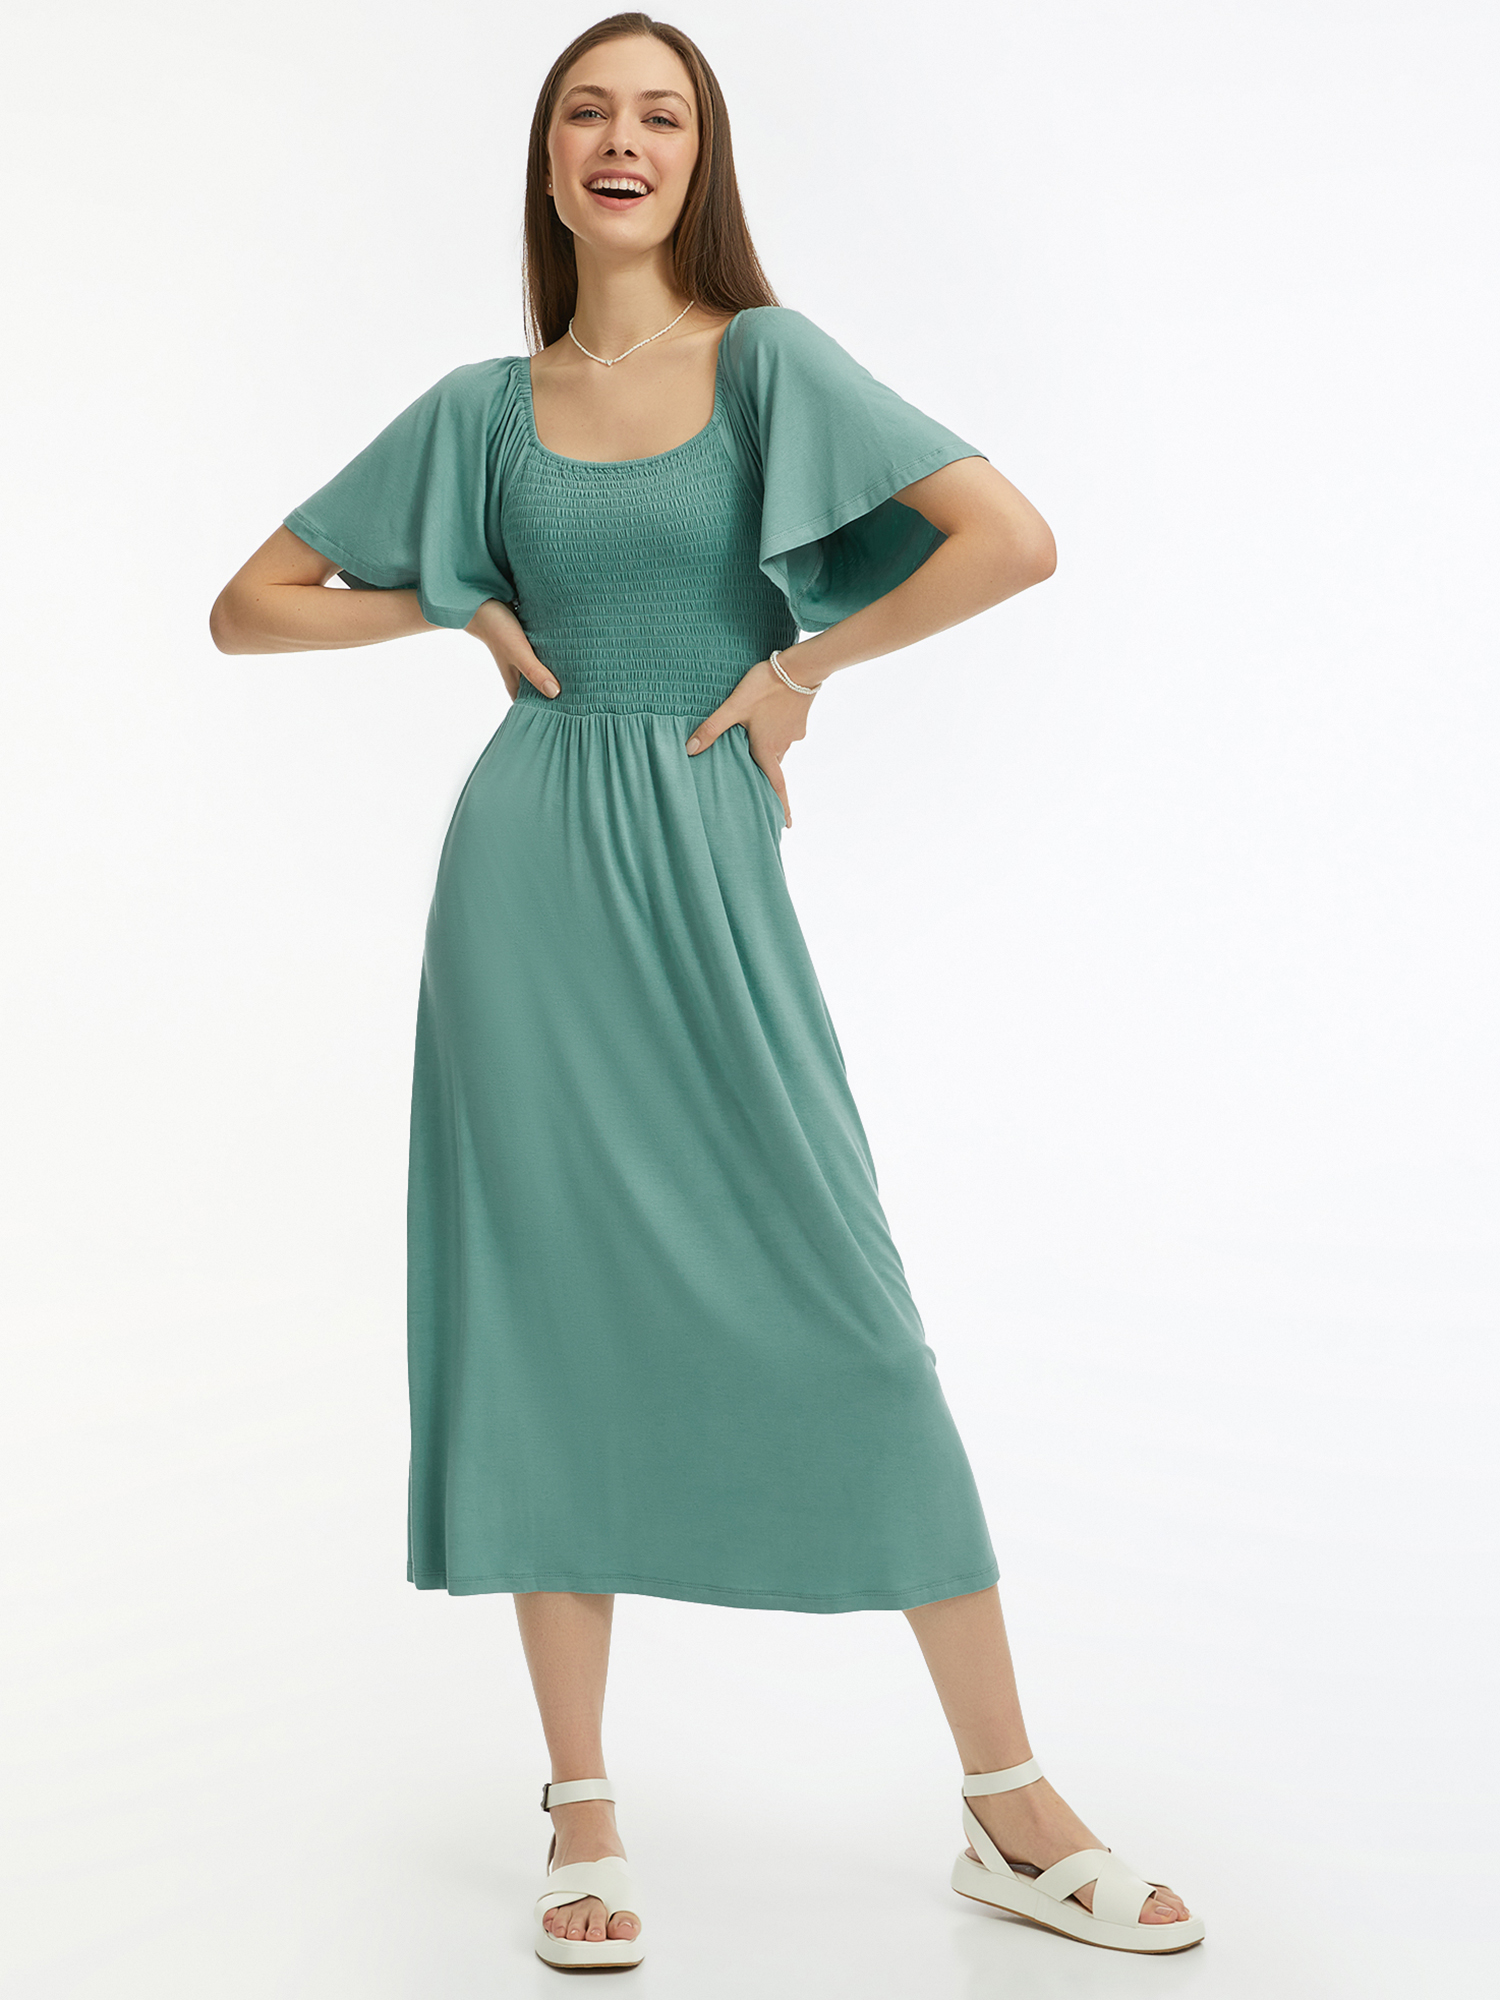 Платье женское oodji 14000184 зеленое XXL